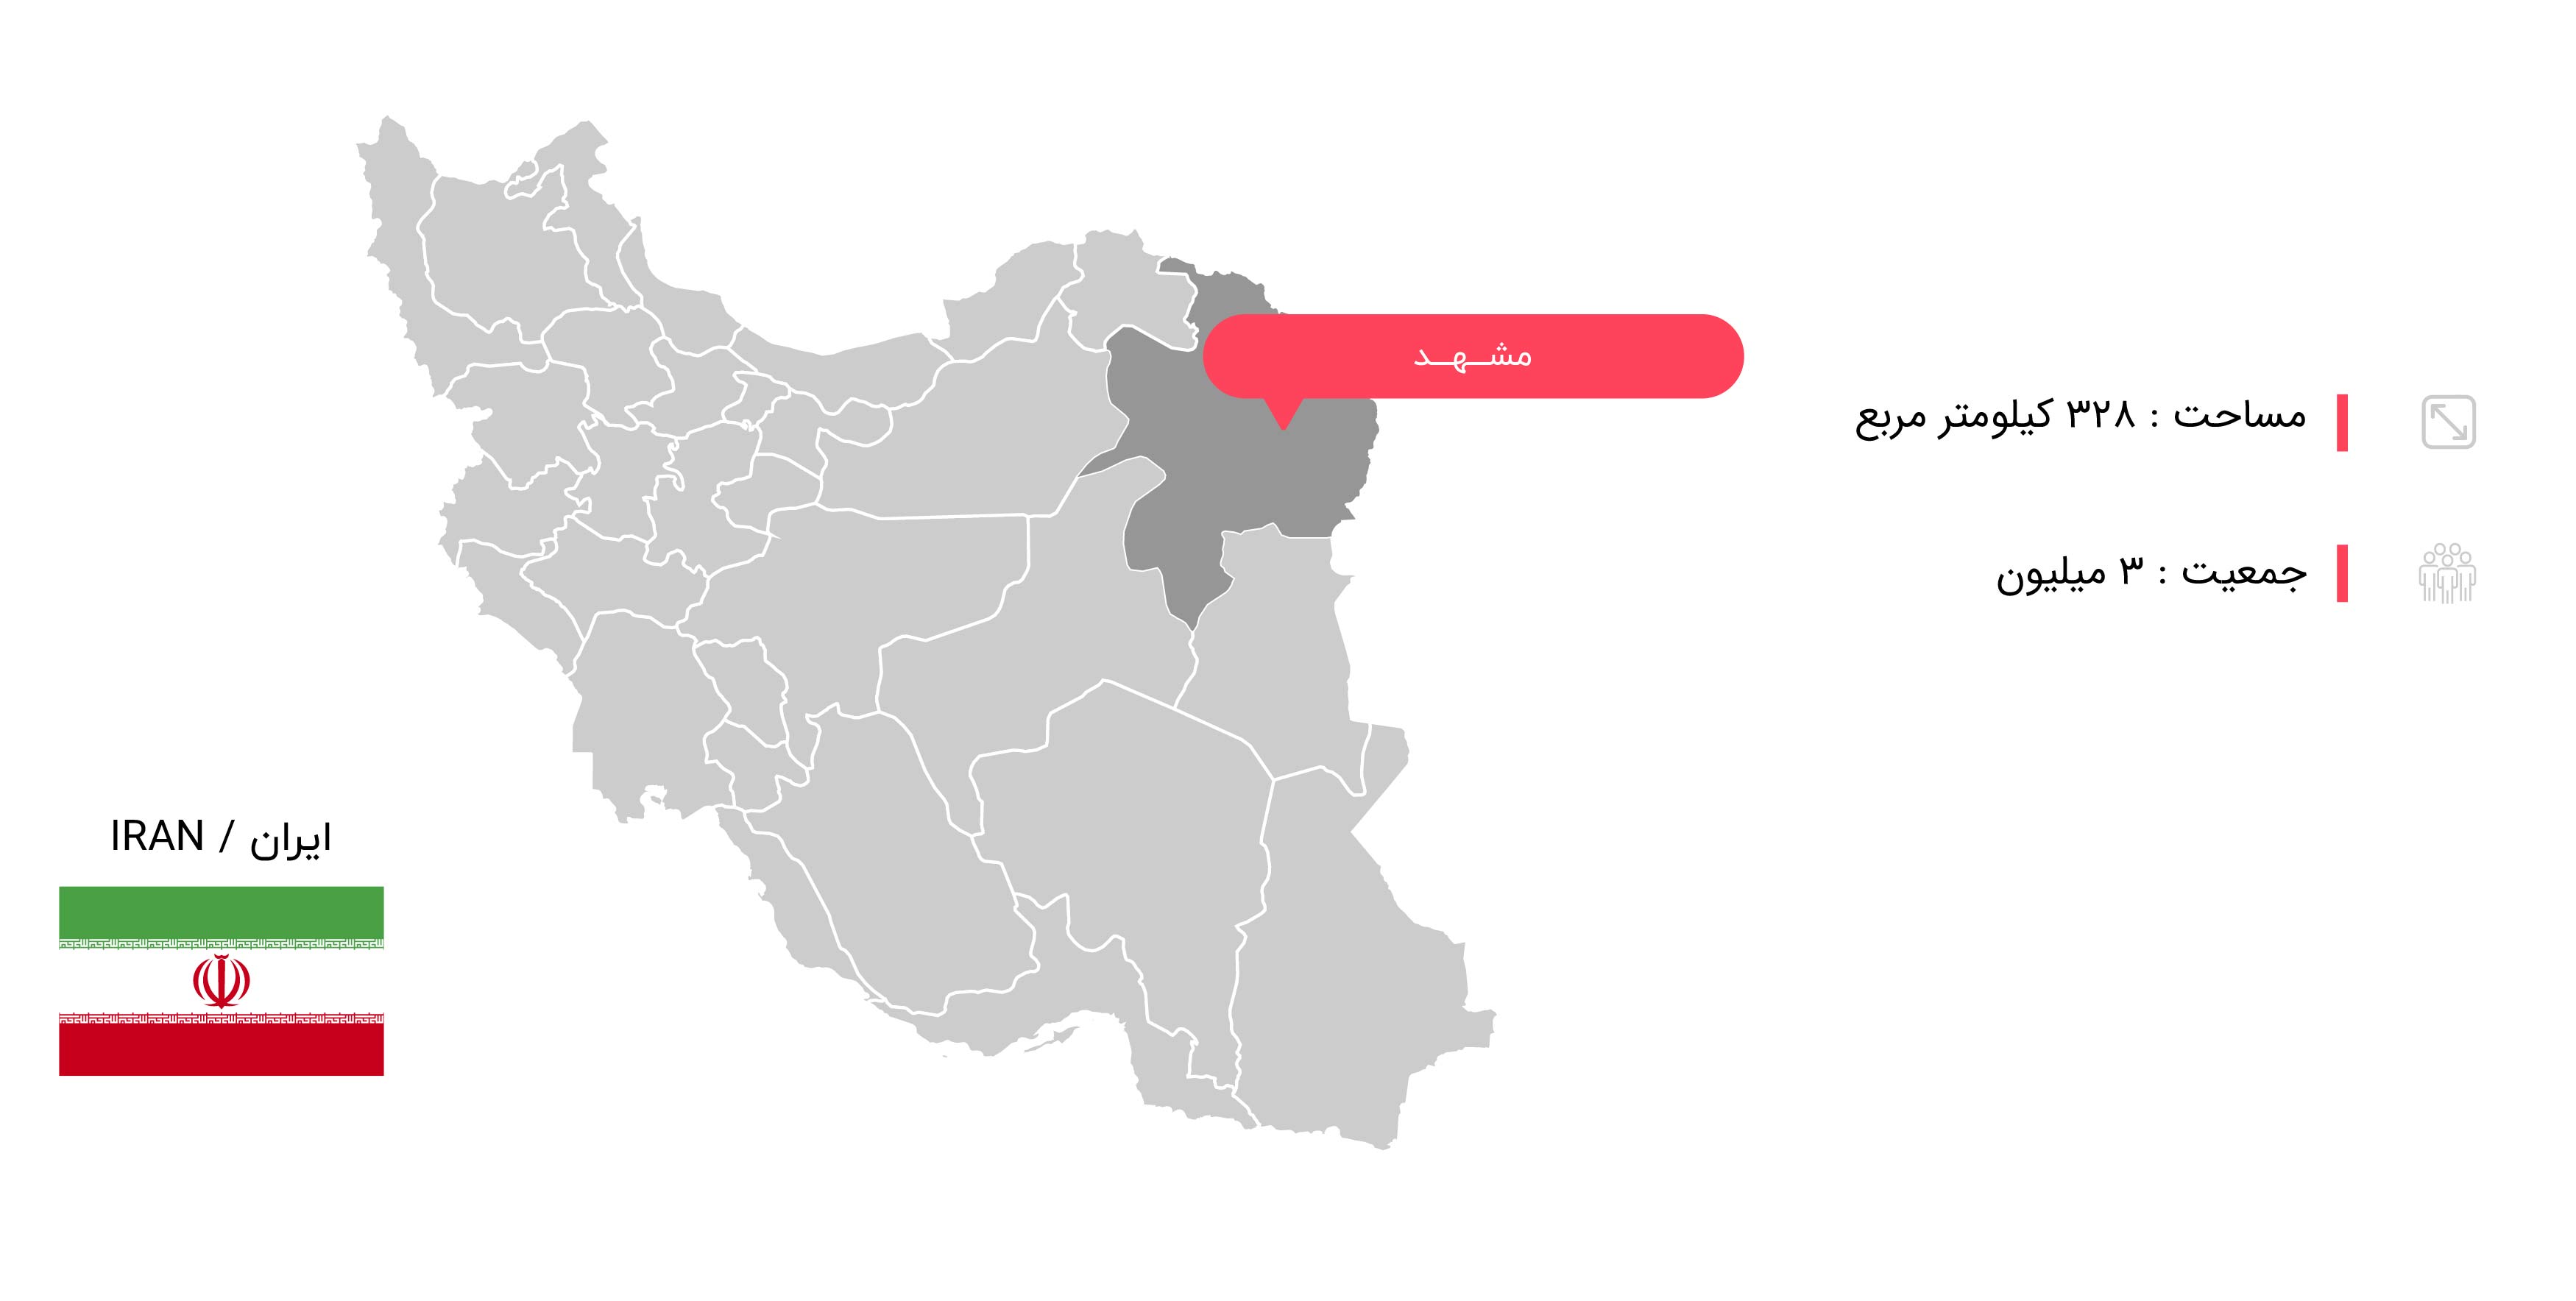  اطلاعات جغرافیایی مشهد